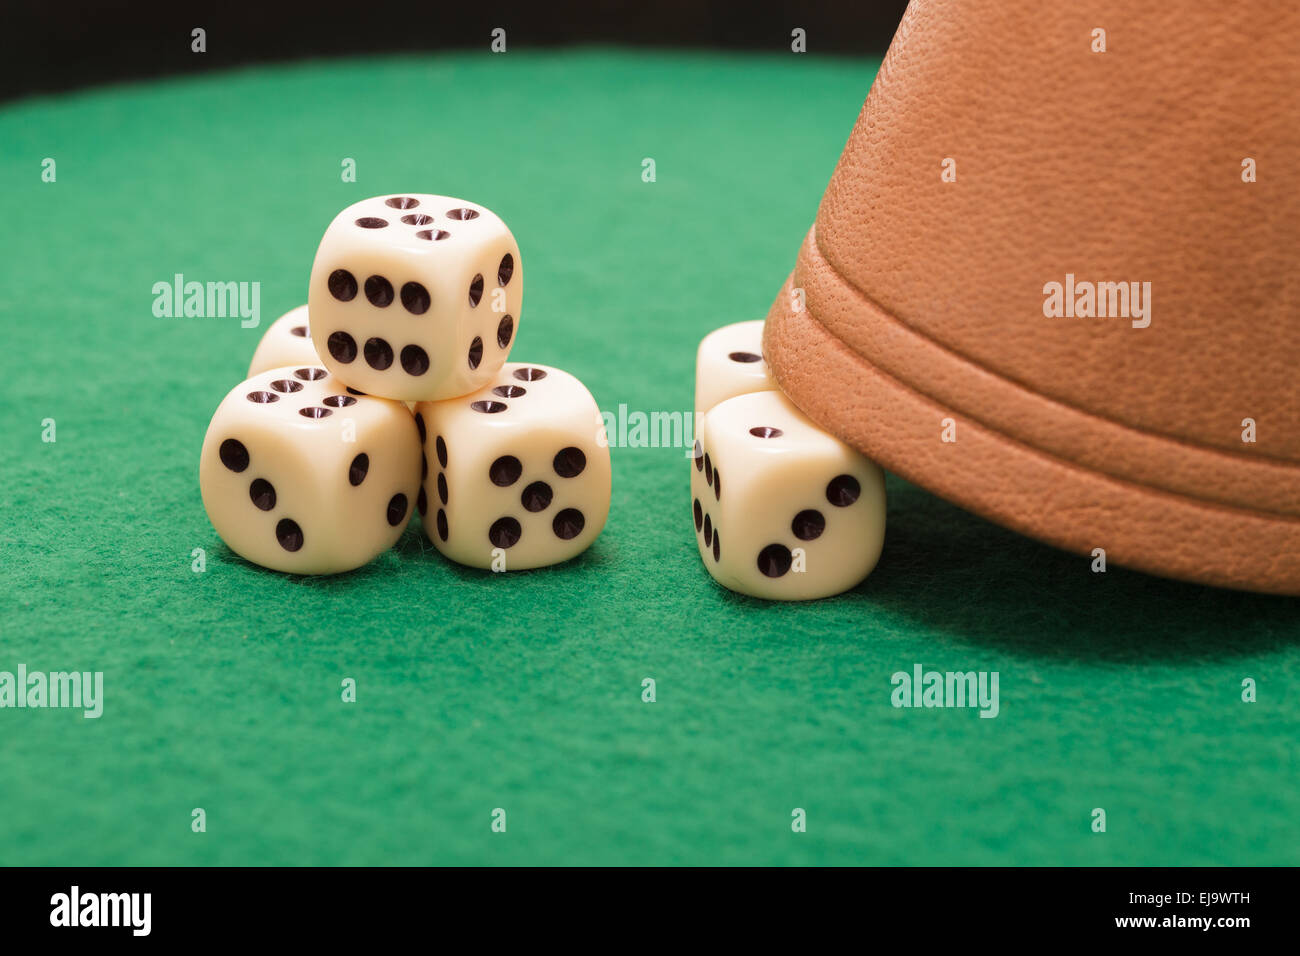 Gamble dice Stock Photo